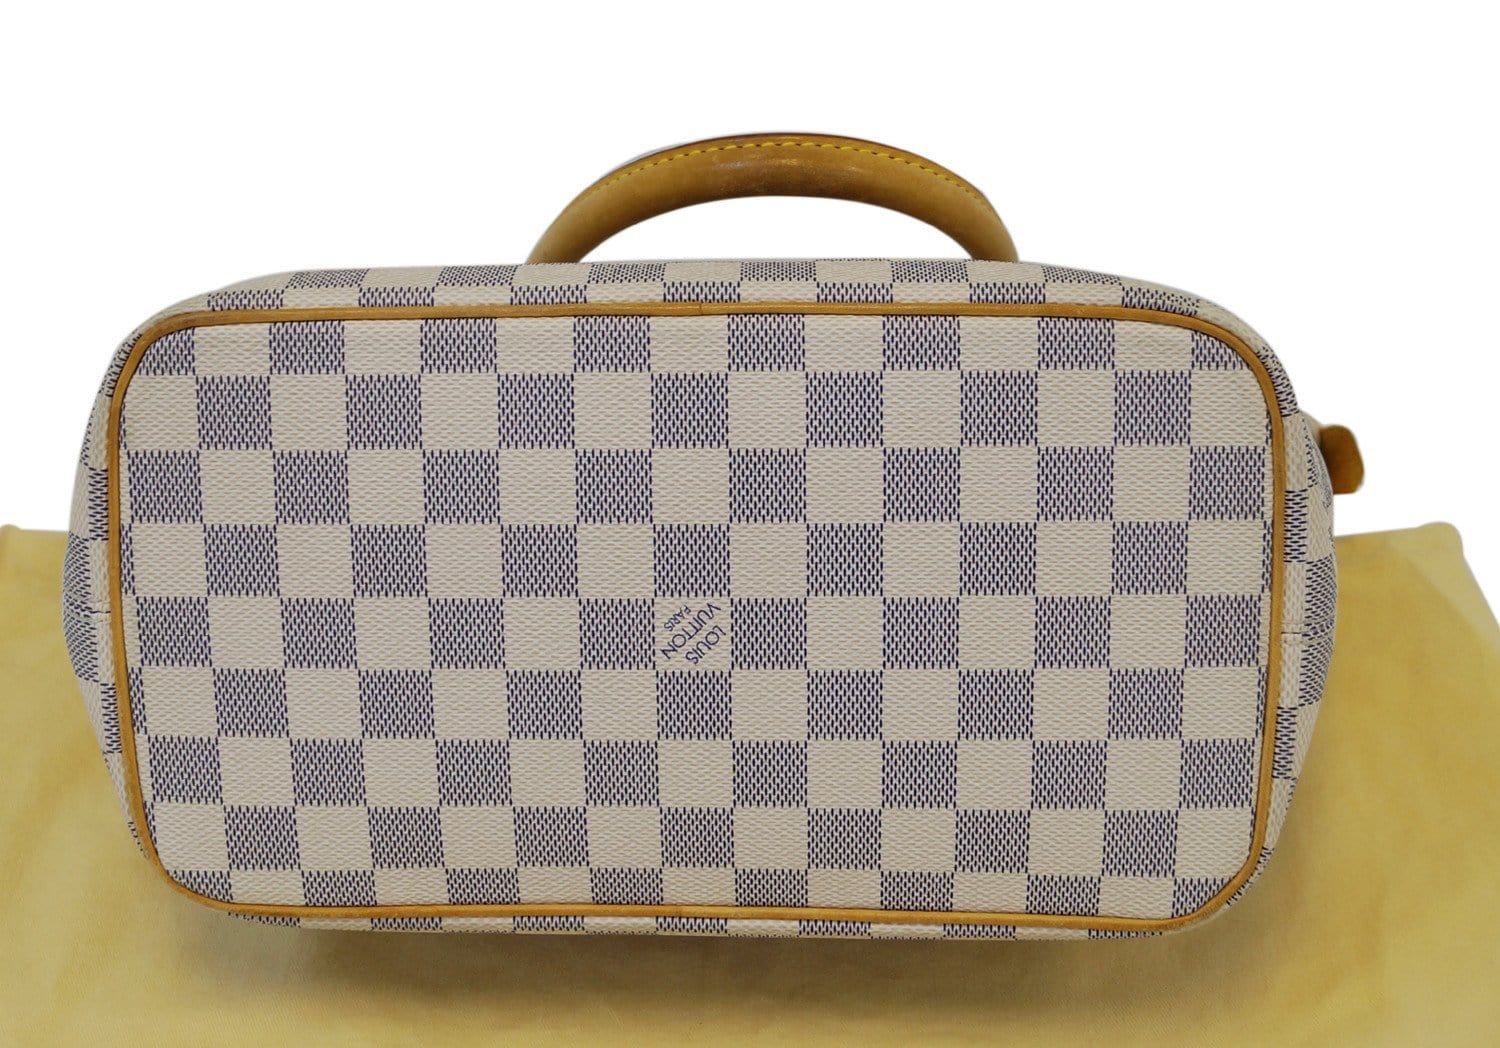 Authentic LOUIS VUITTON Saleya PM Damier Azur Tote Hand Shoulder Bag #51344